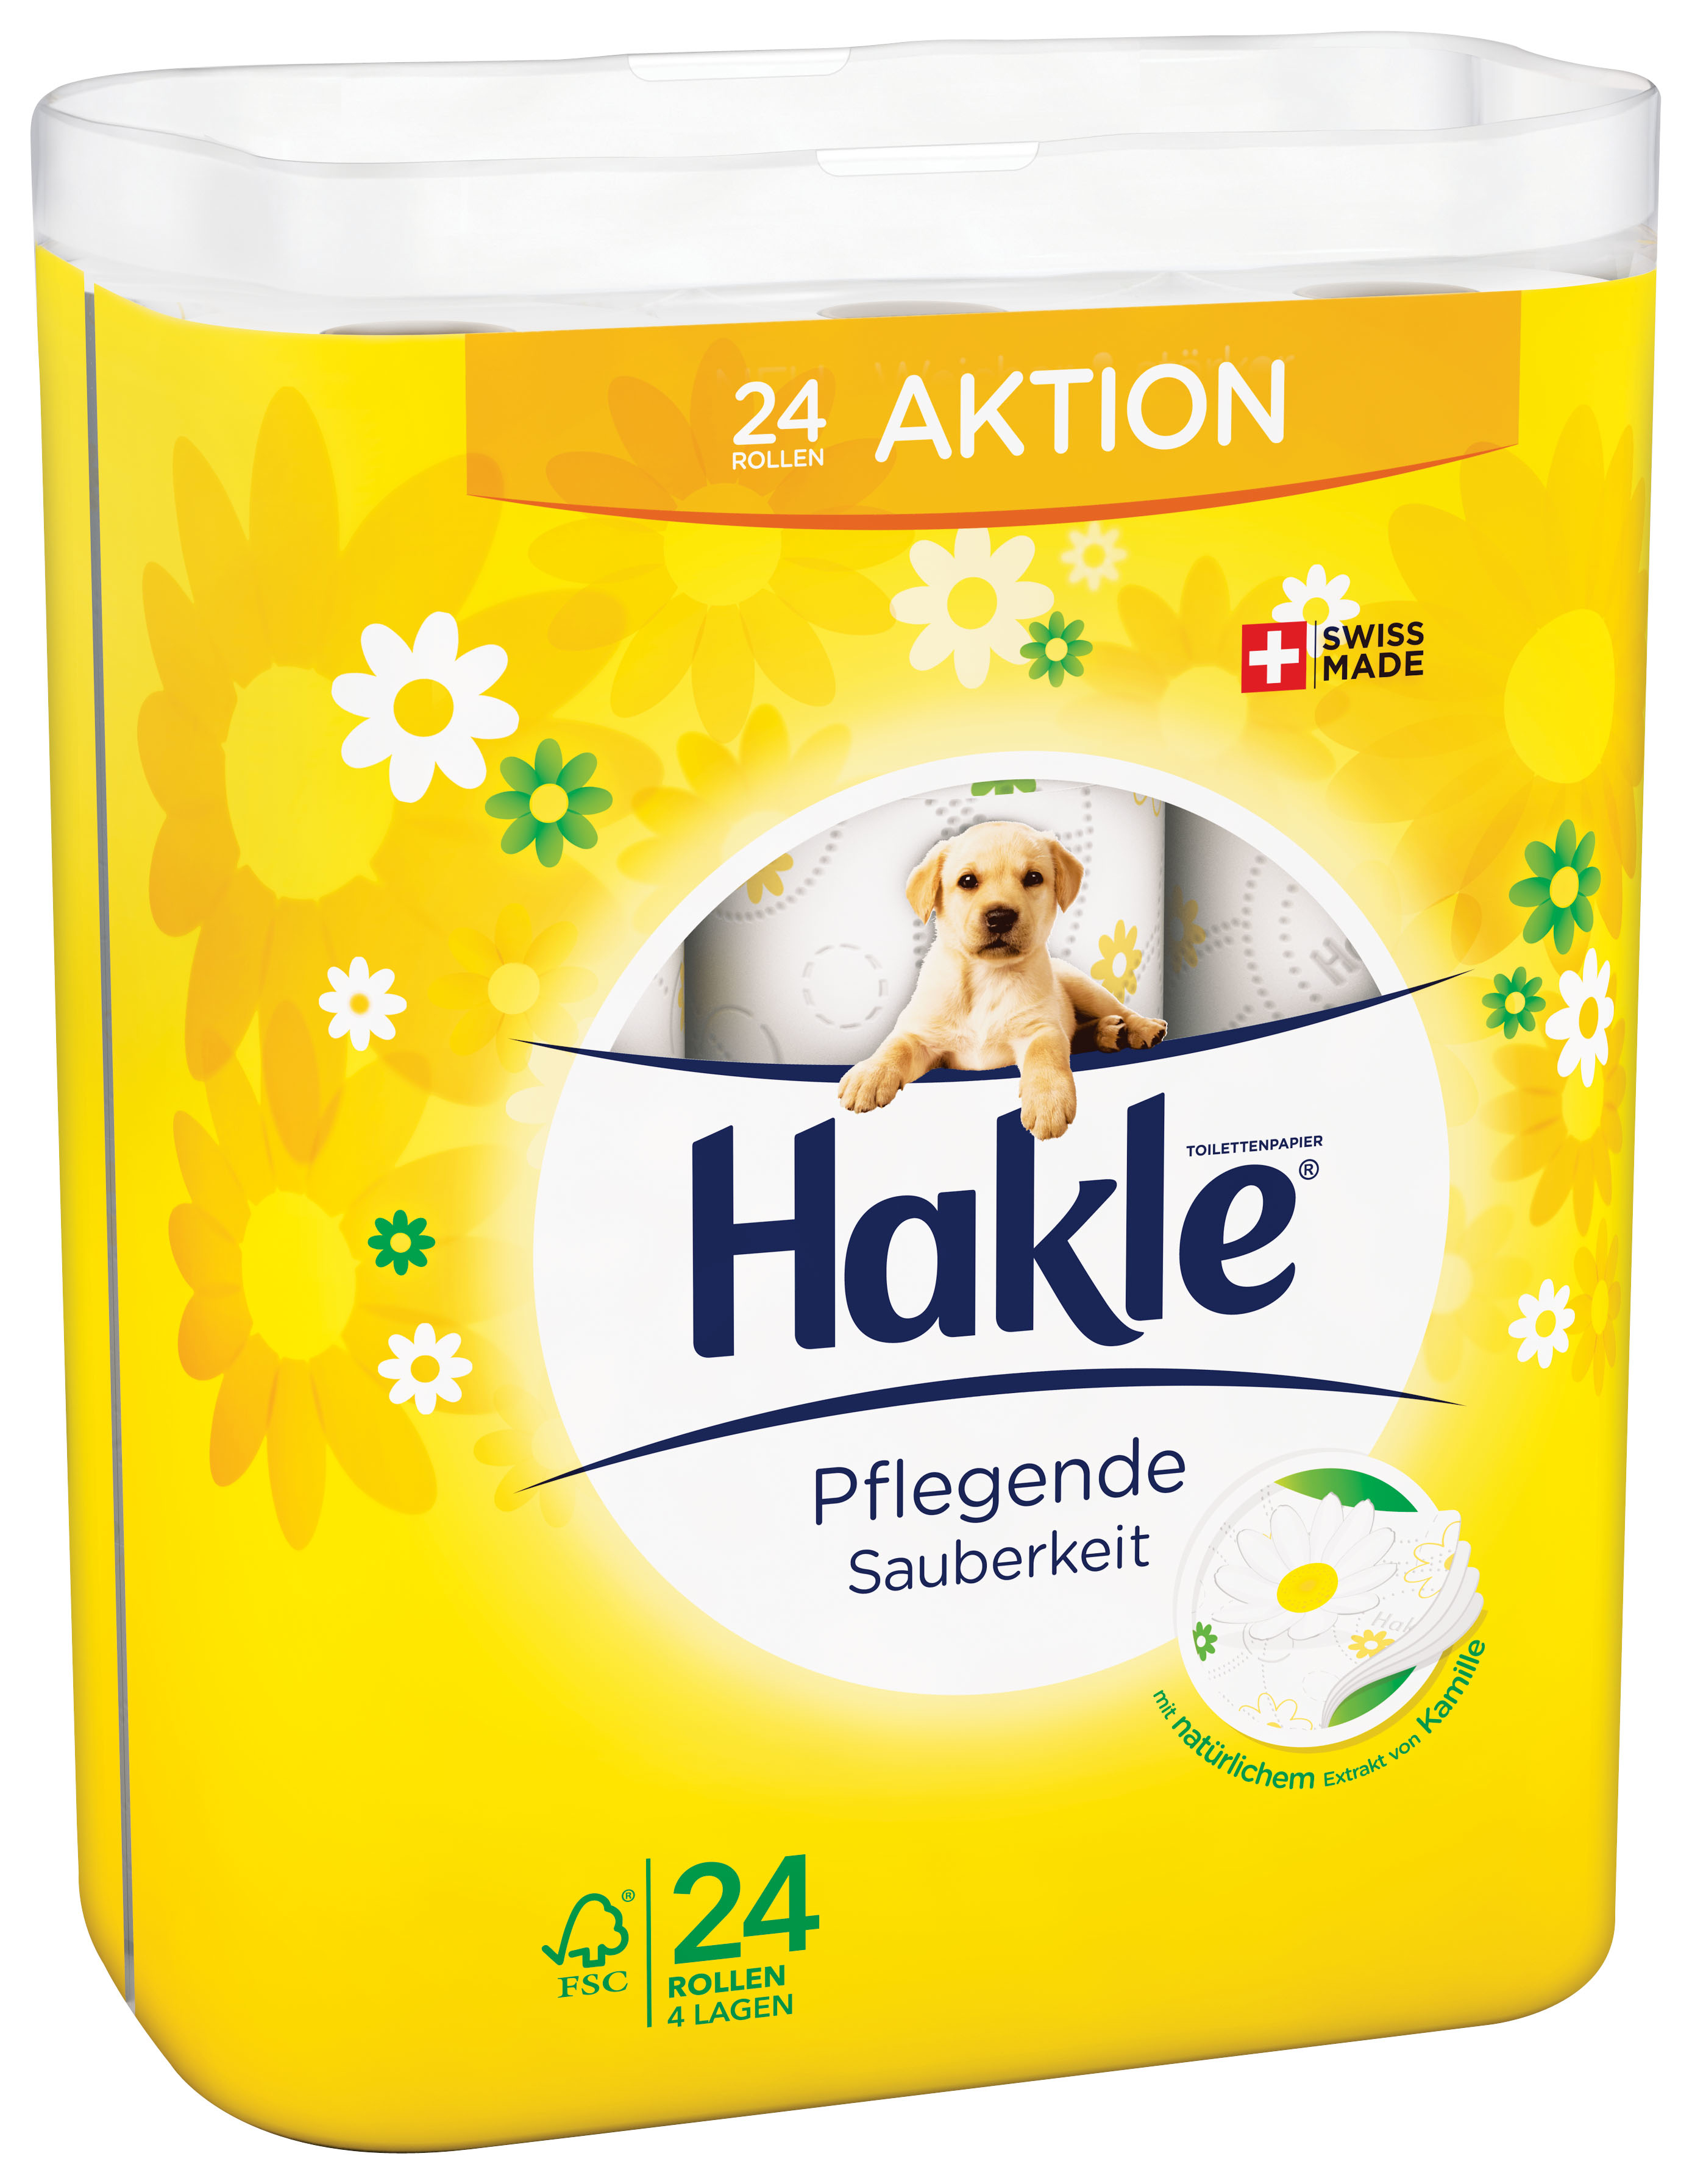 HAKLE Toilettenpapier Kamille 4410808 24 Rollen, 4-lagig